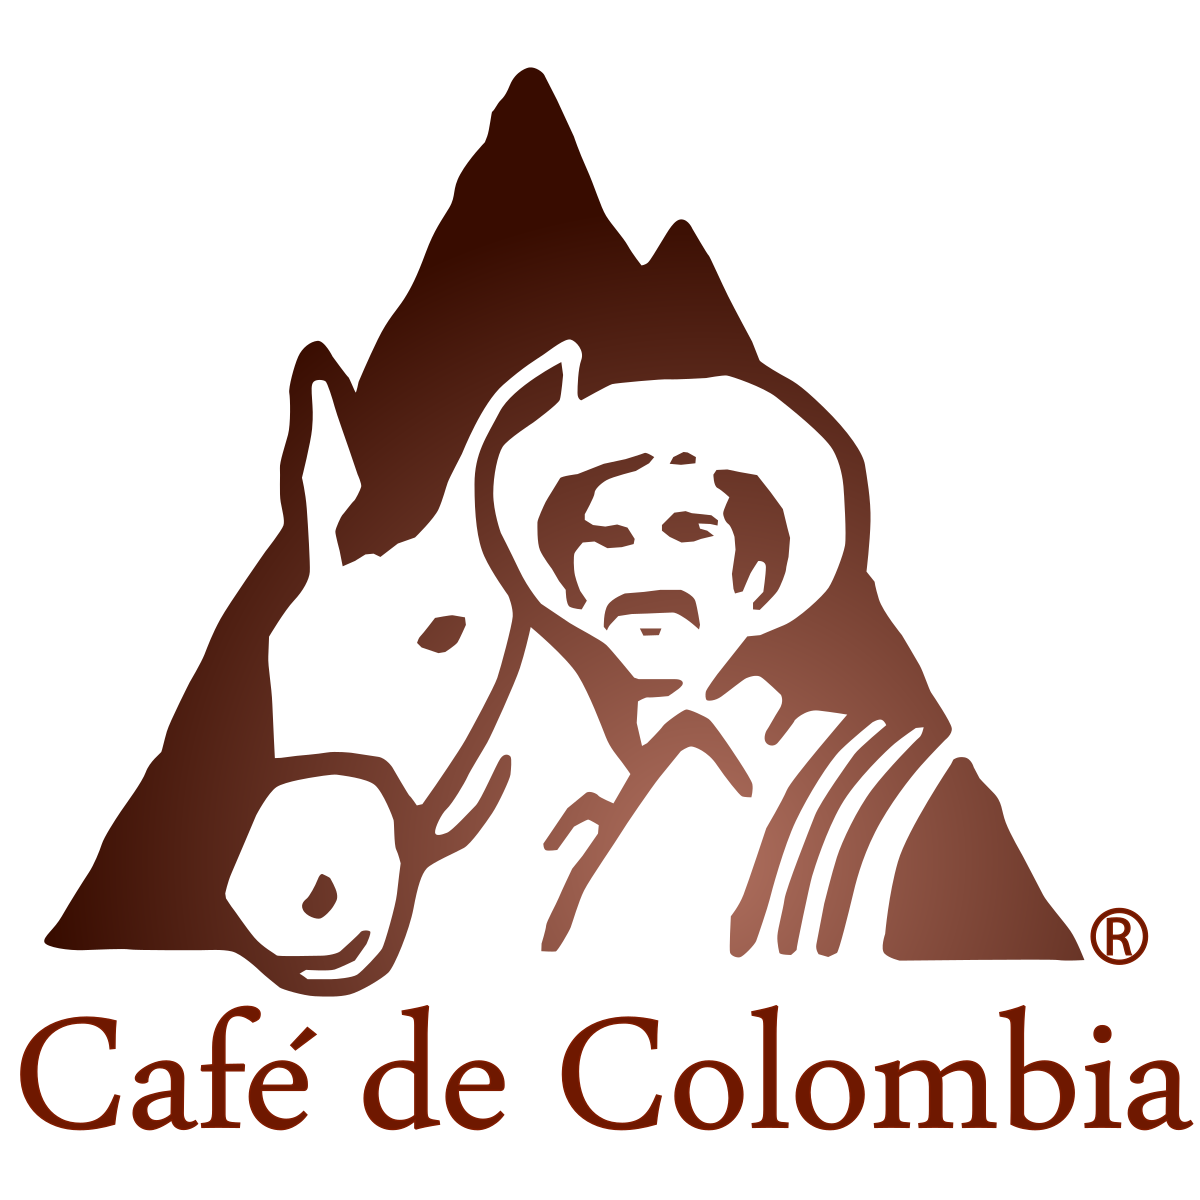 خوان والدز و قاطرش؛ نماد قهوه کلمبیا 